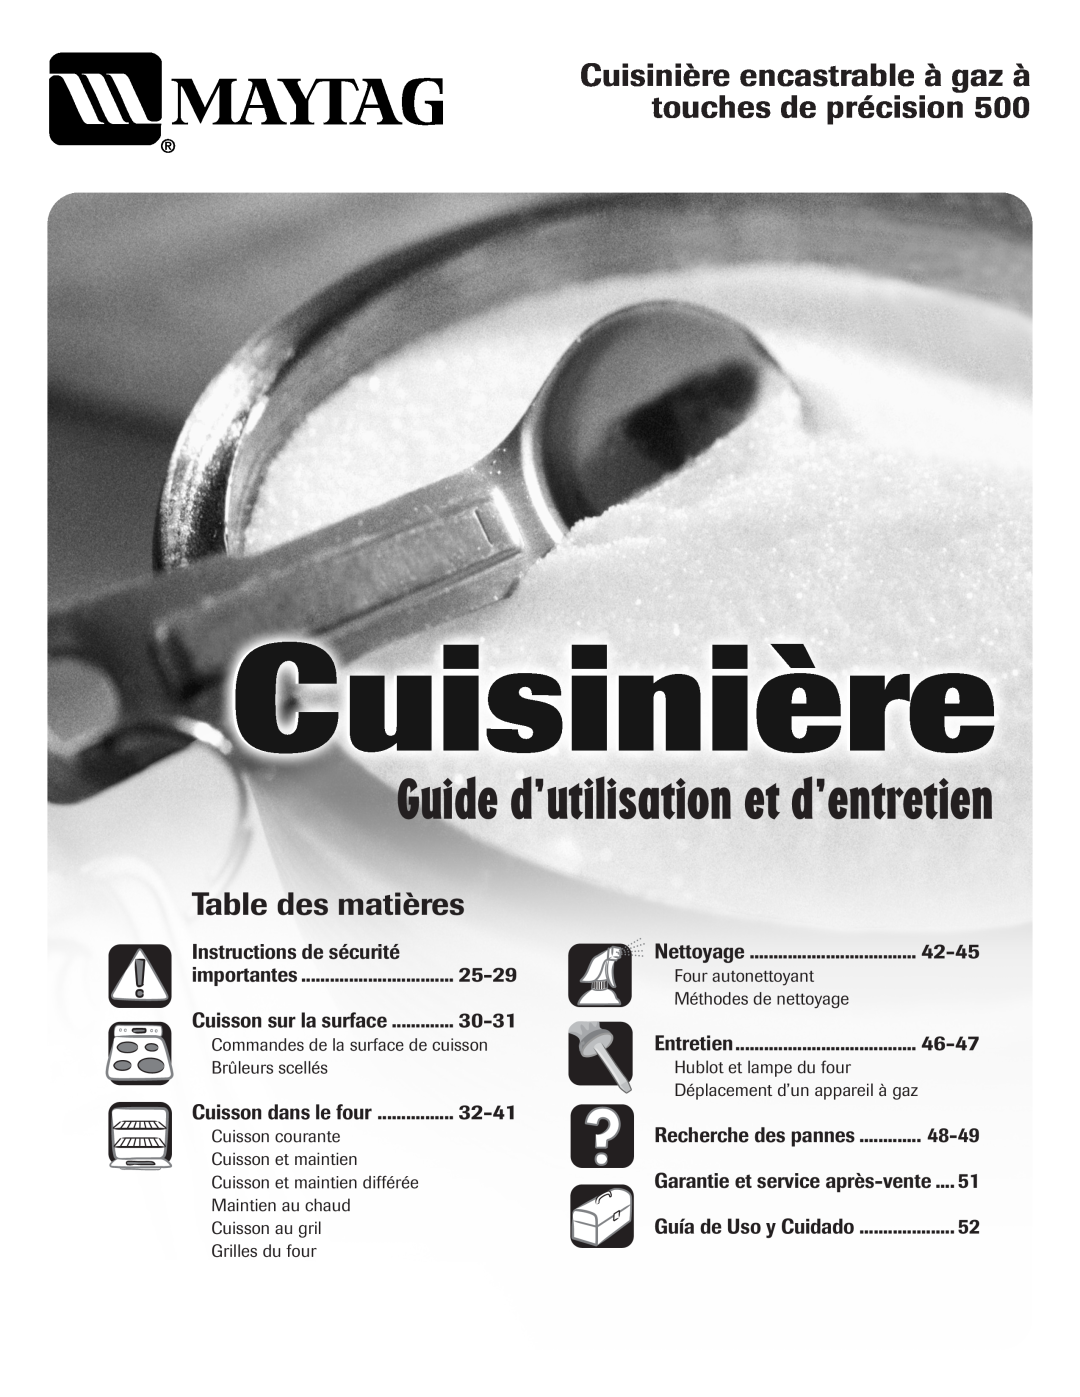 Magic Chef 500 Guide d’utilisation et d’entretien, Table des matières, Instructions de sécurité, 42-45, 25-29, 30-31 